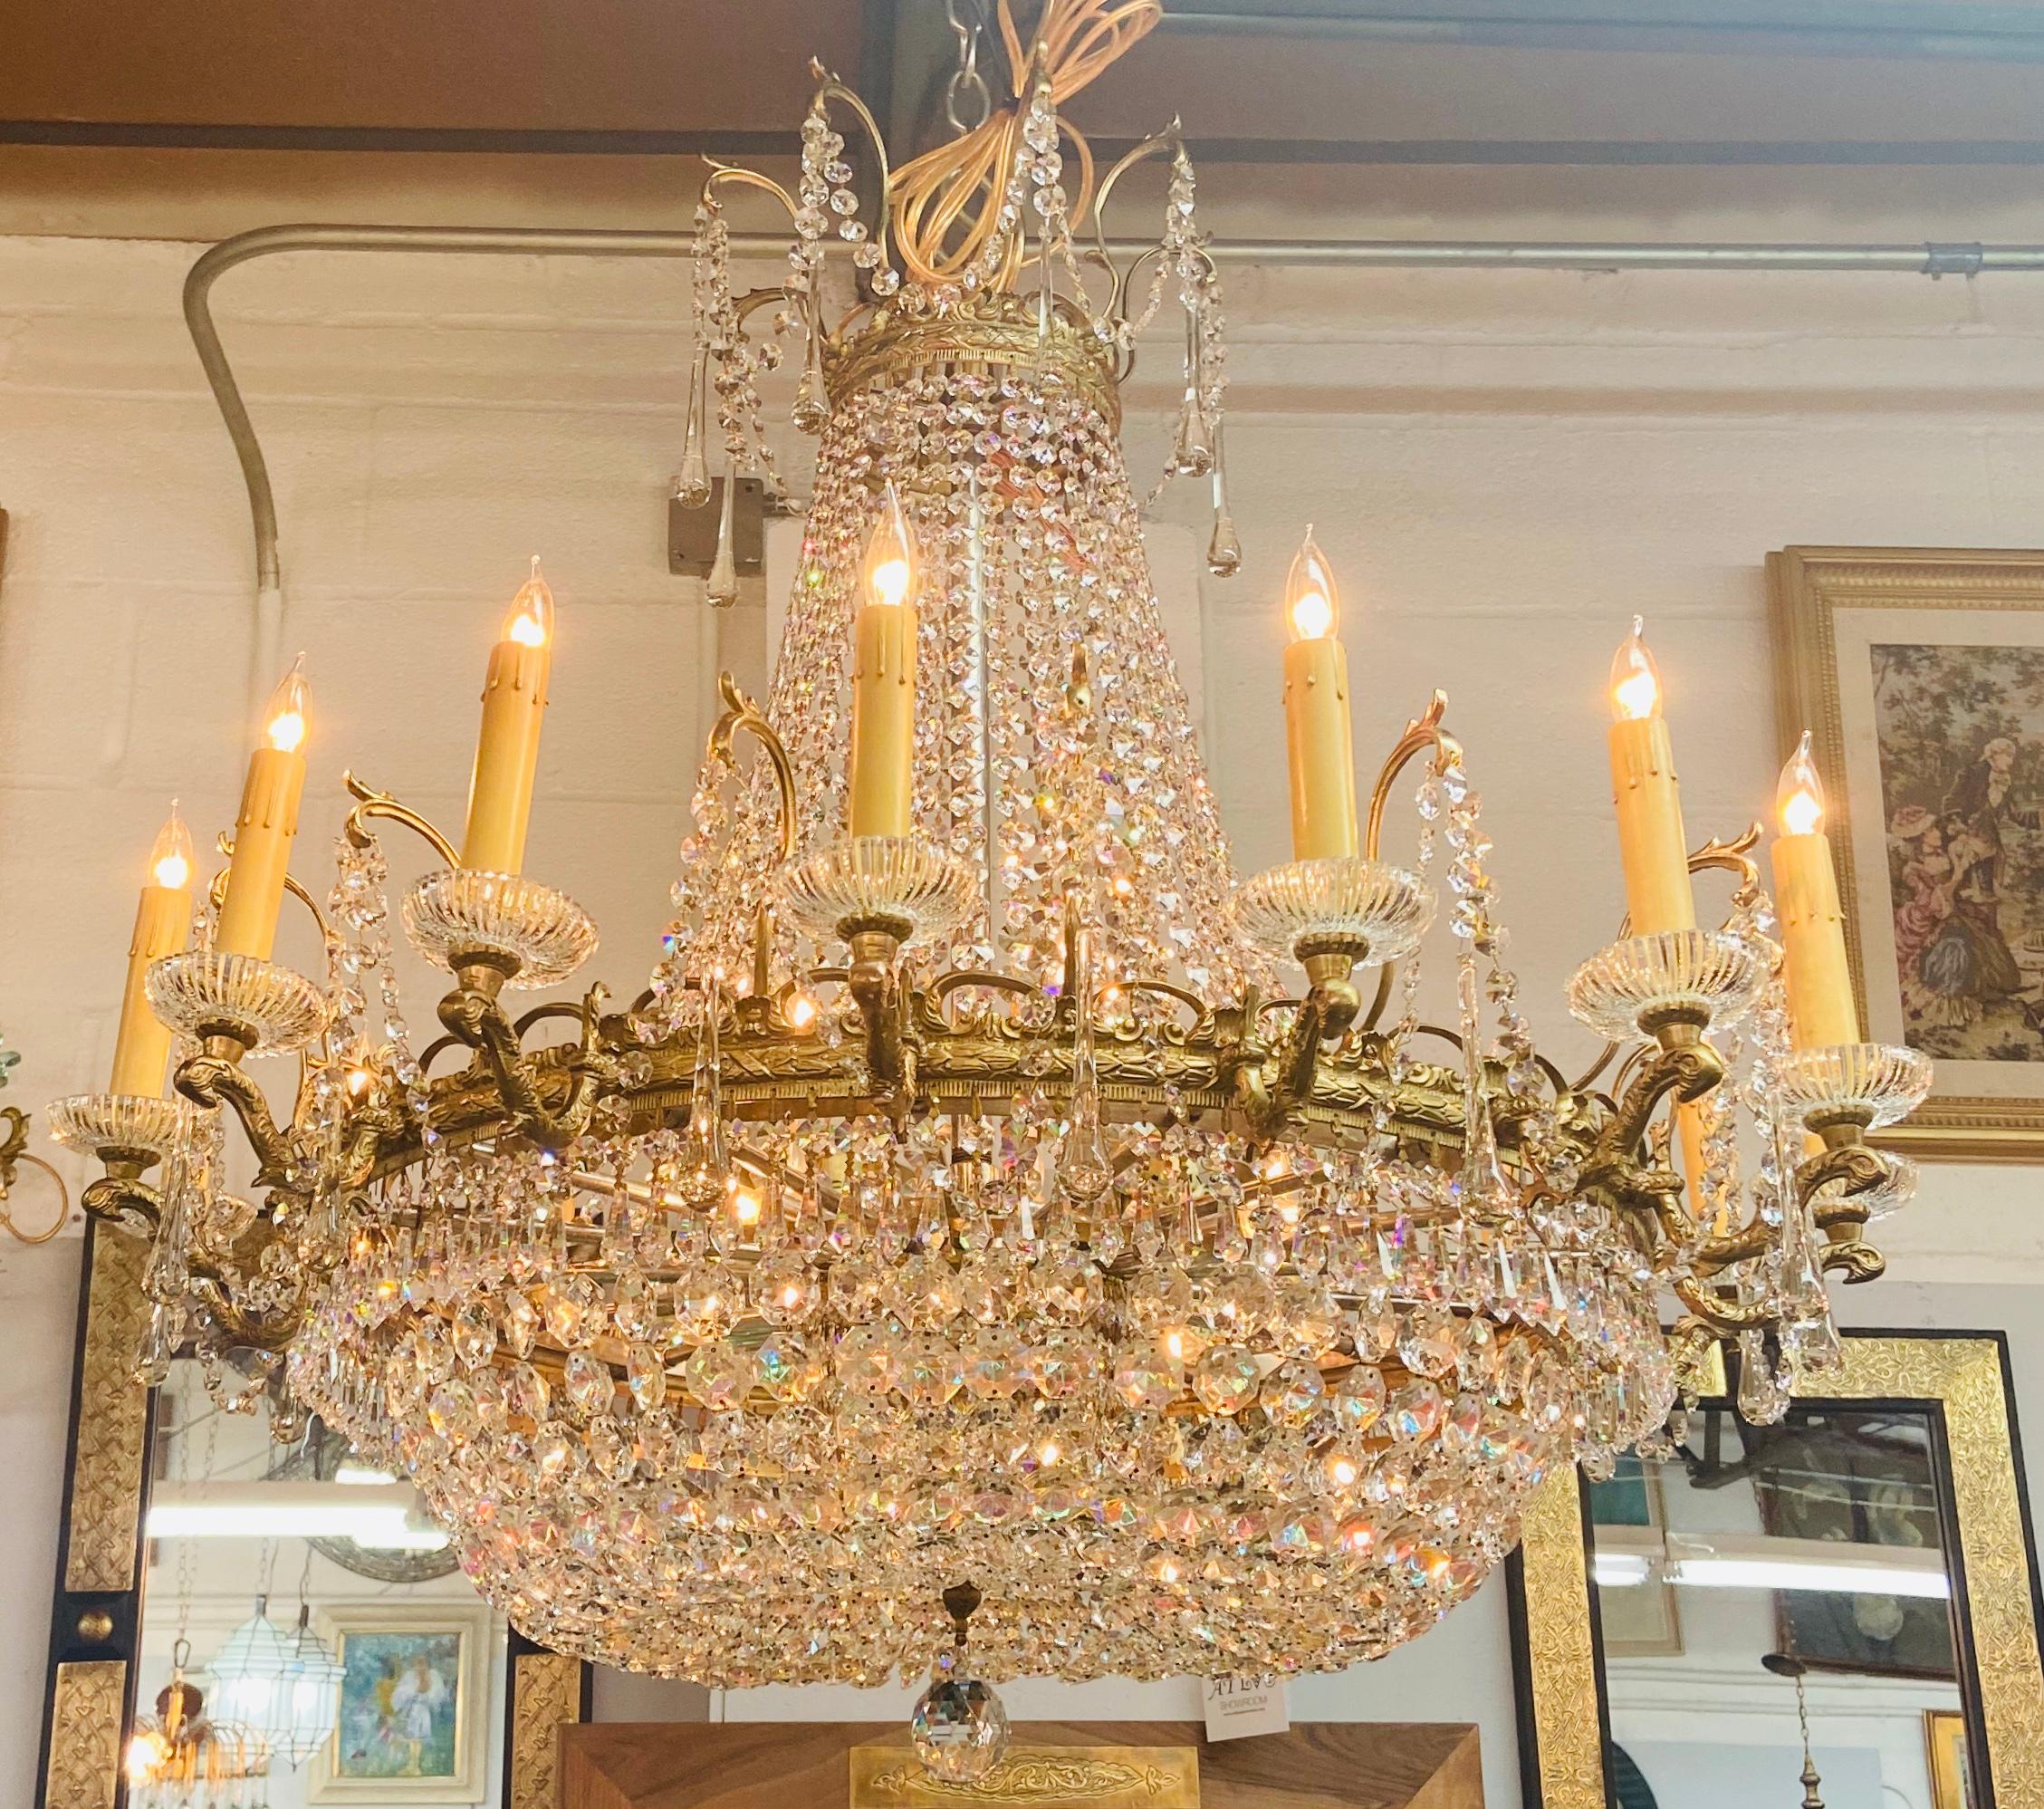 Magnifique et rare pièce du 19e siècle  Lustre de style Louis XVI en bronze et cristal avec 16 bras/chandeliers et électrifié à l'intérieur avec 7 candélabres.
Le lustre en forme de panier présente de multiples brins de cristal et une bande de